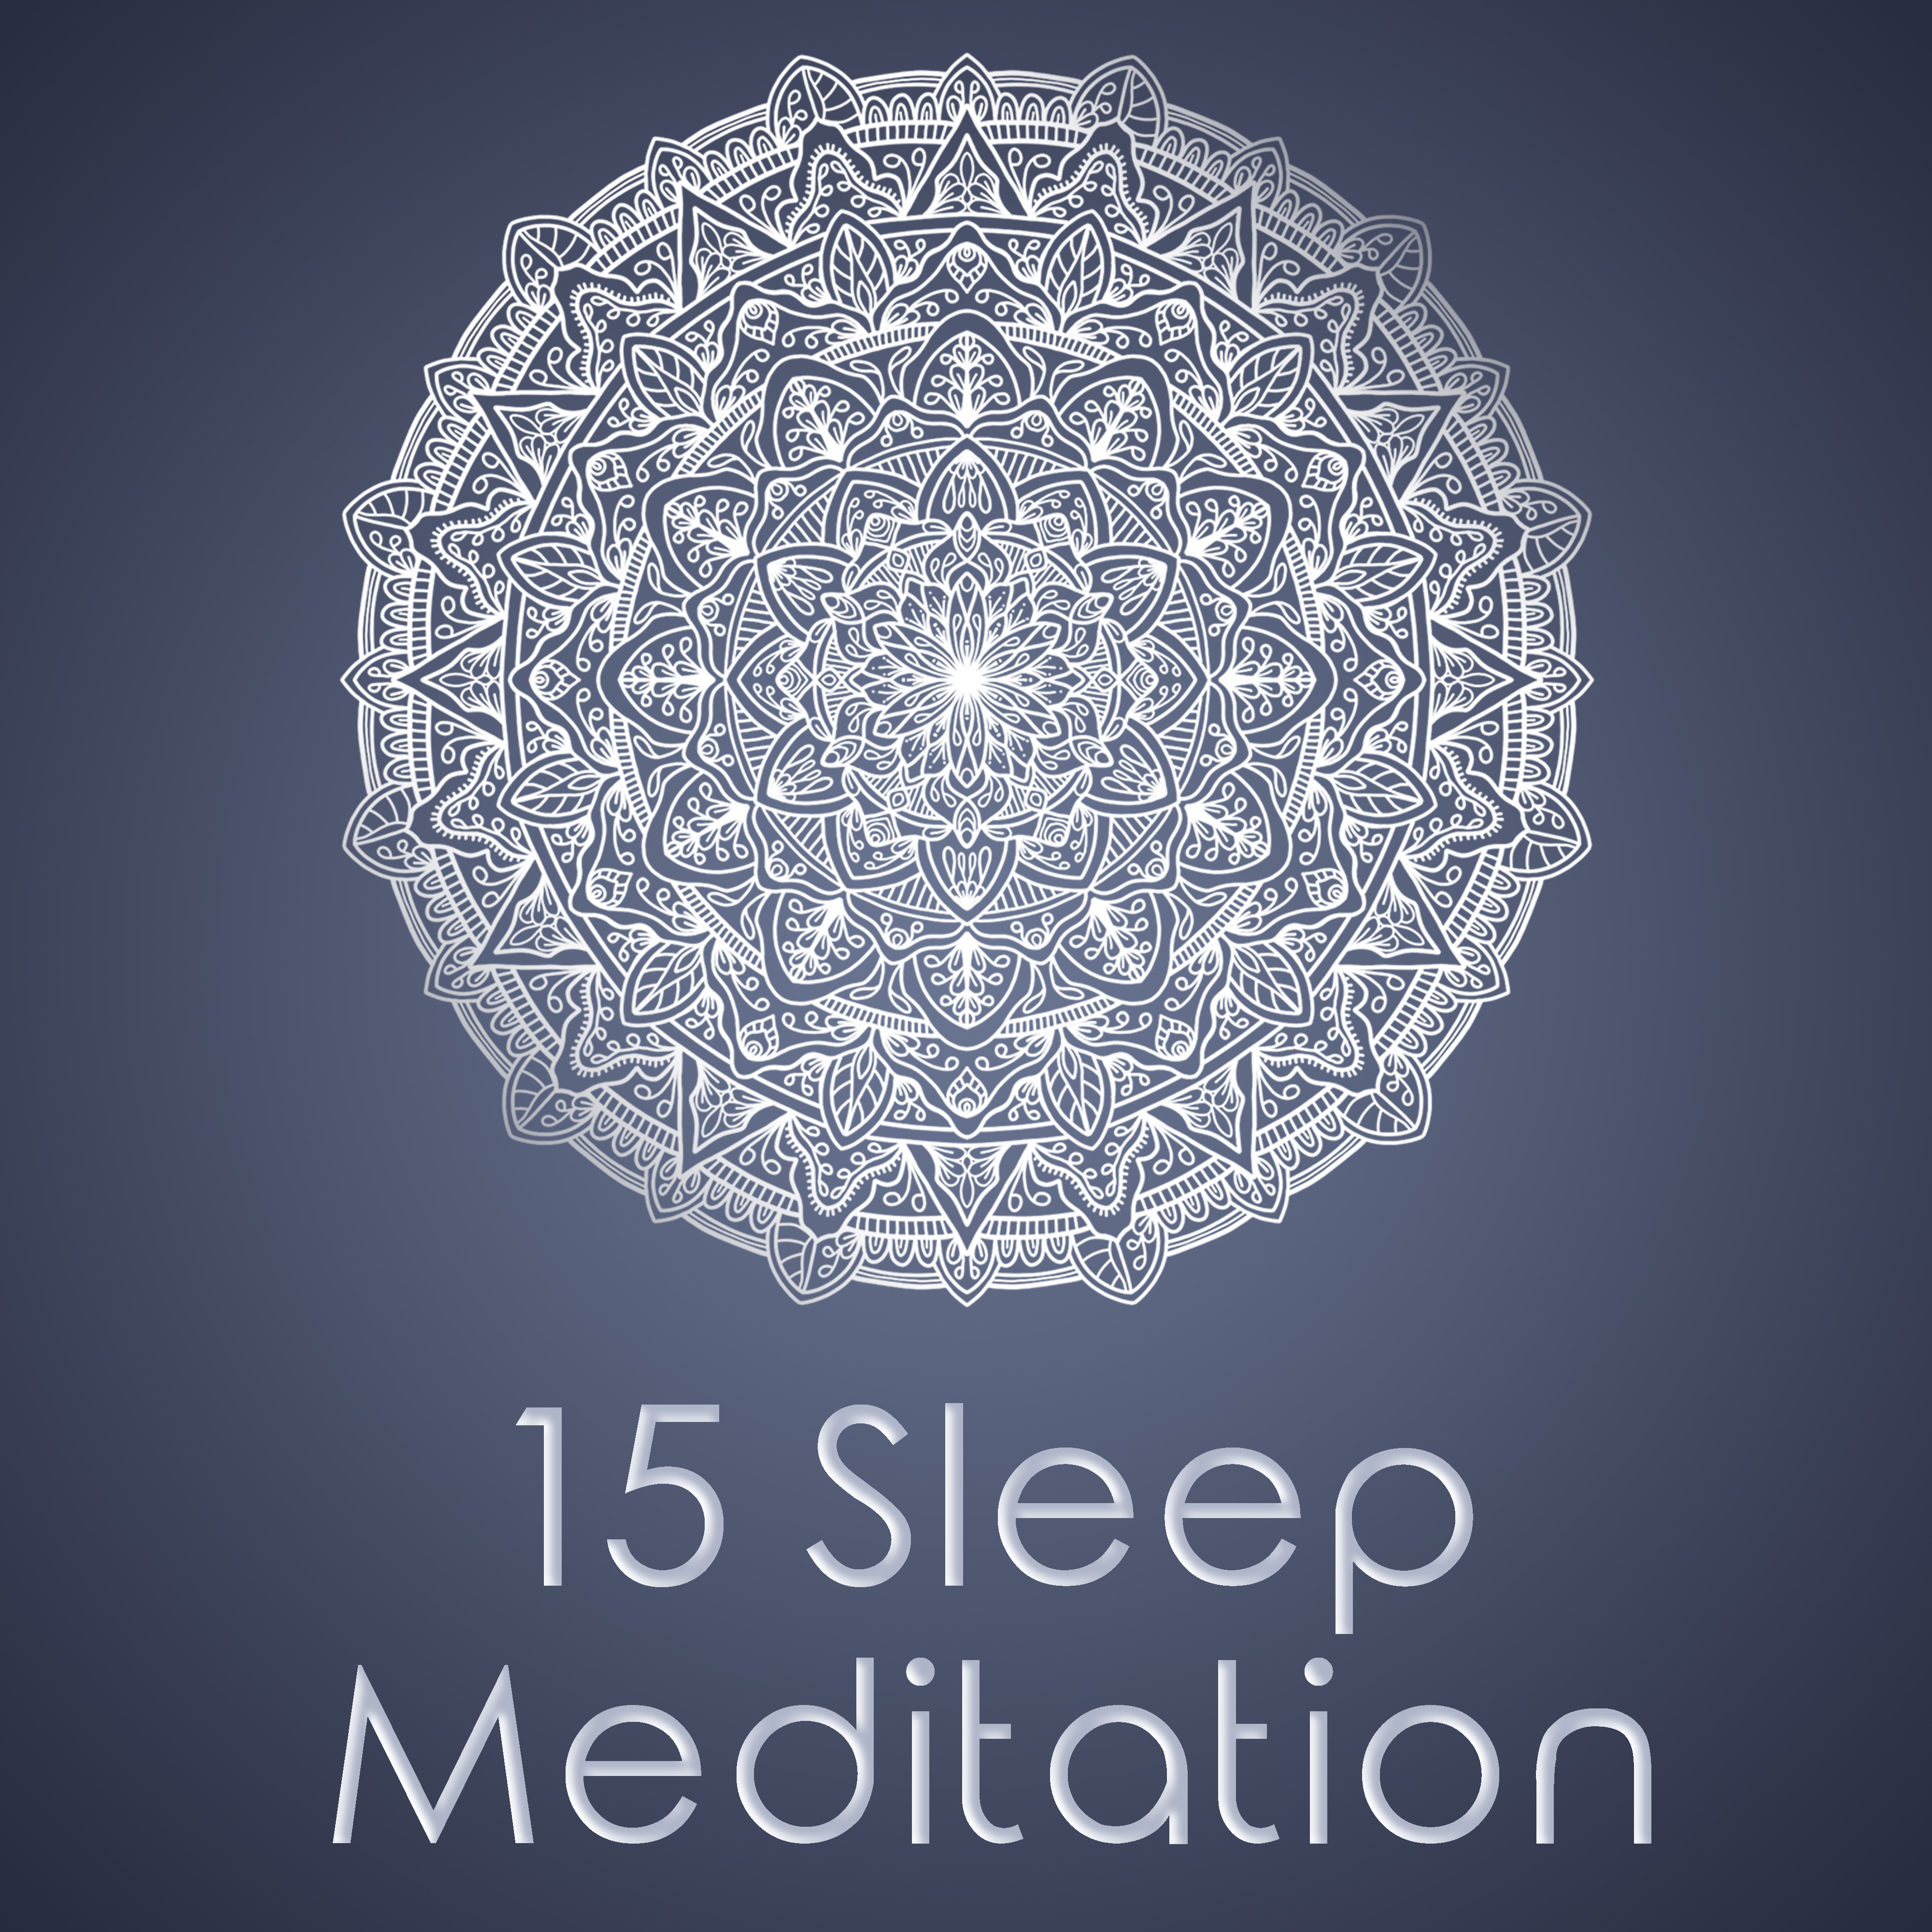 15 Sleep Meditation